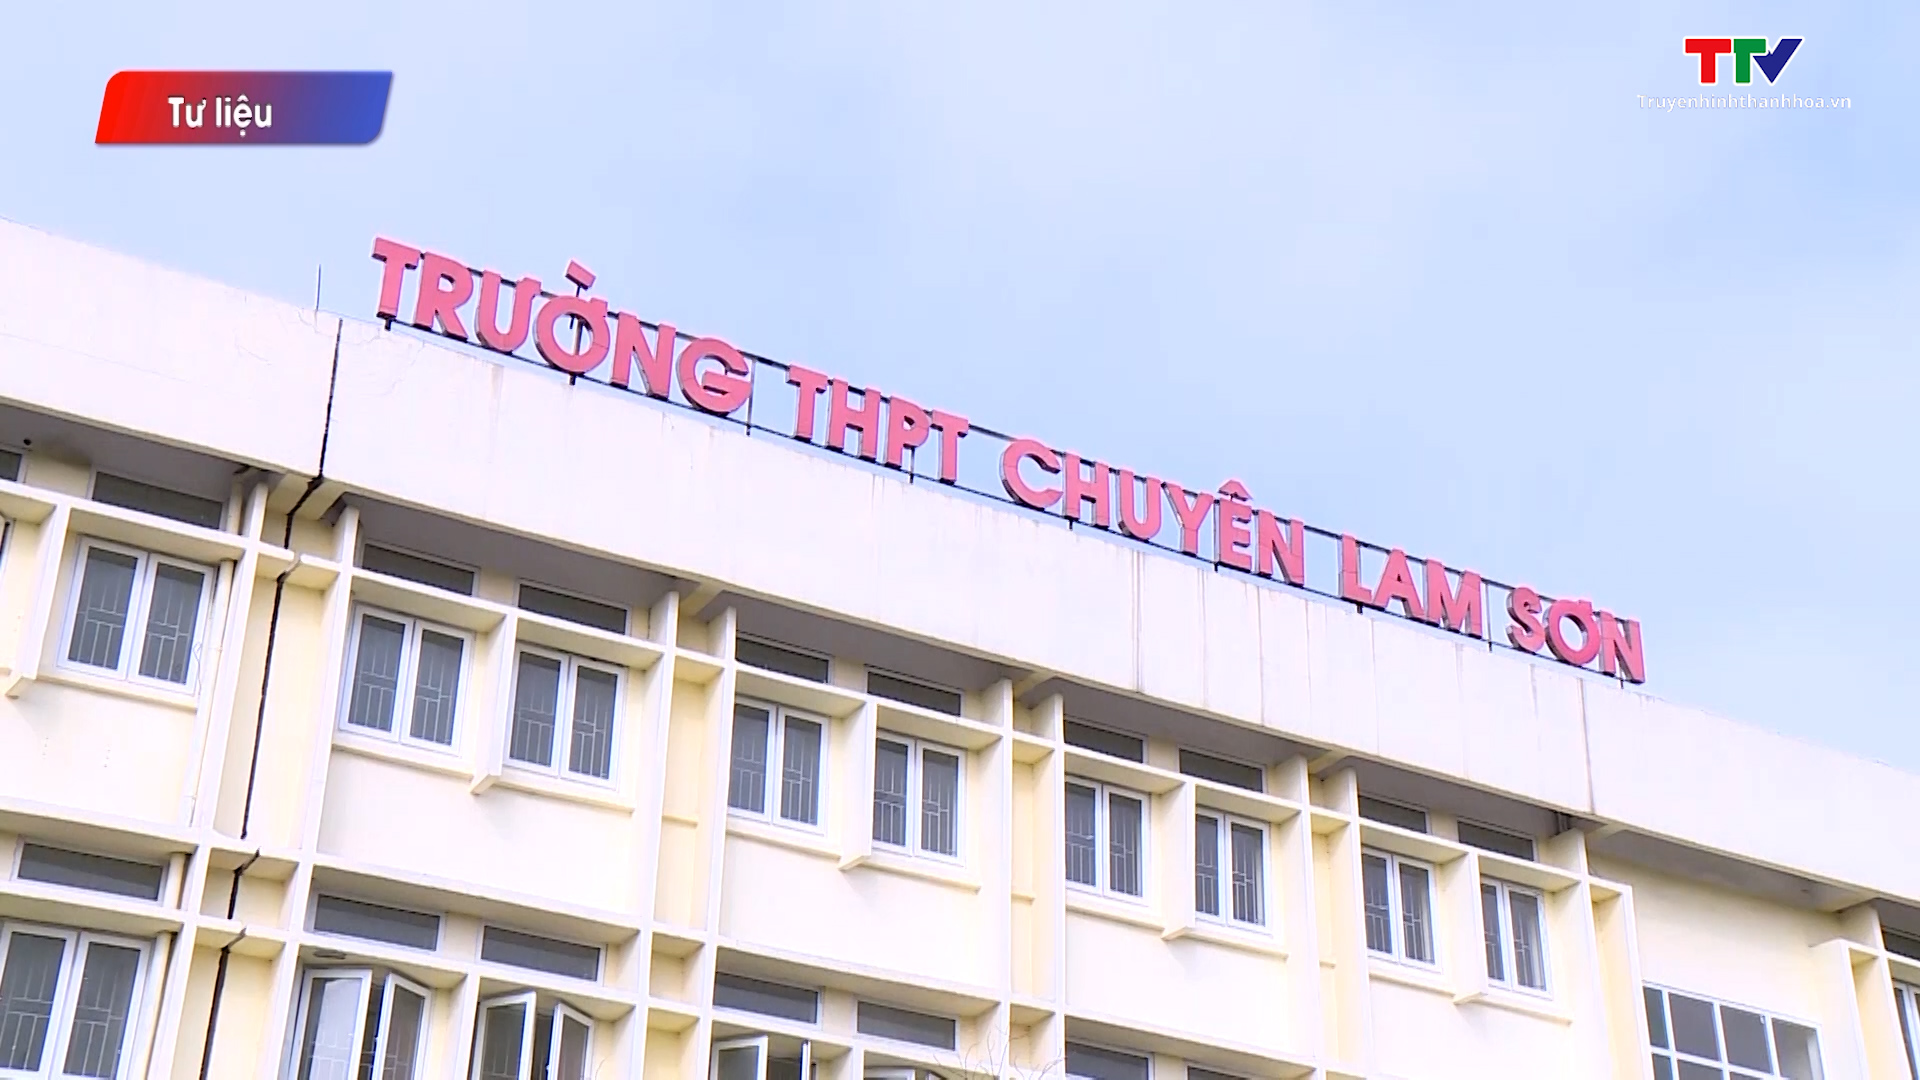 Hơn 1.500 thí sinh đăng ký dự thi vào trường THPT Chuyên Lam Sơn - Ảnh 3.